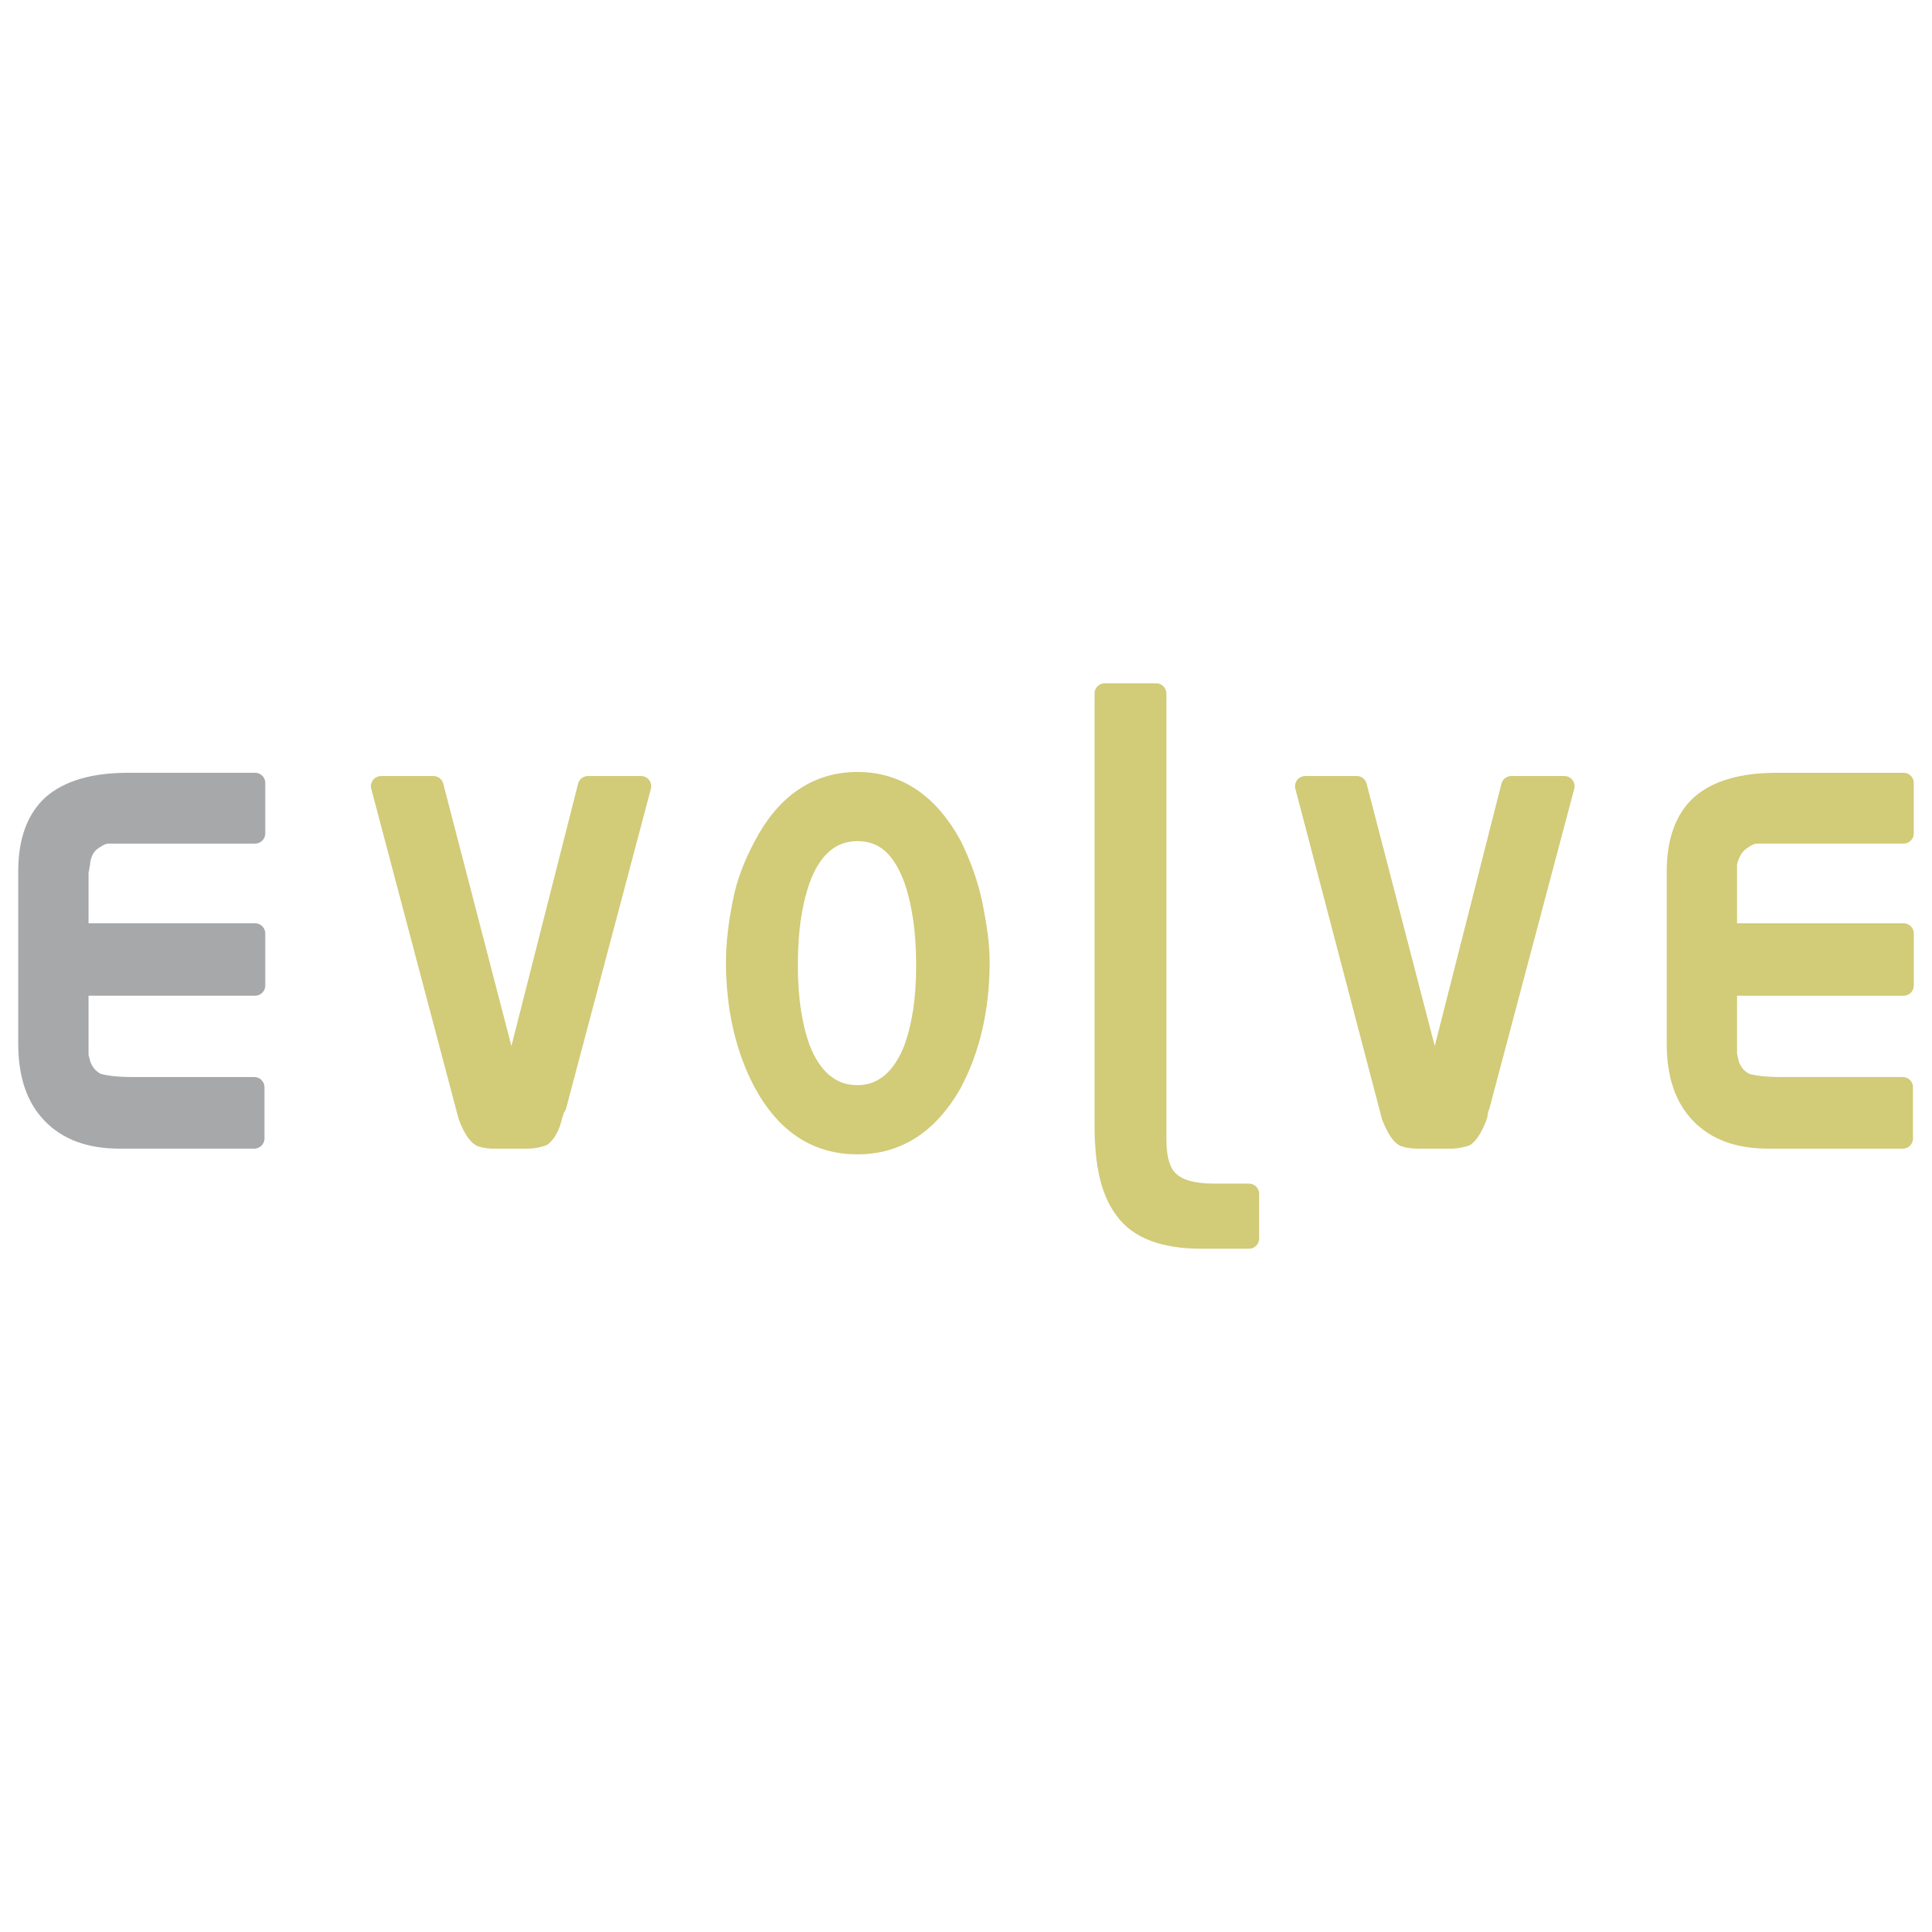 Evolve Logo - Evolve Logo PNG Transparent & SVG Vector - Freebie Supply